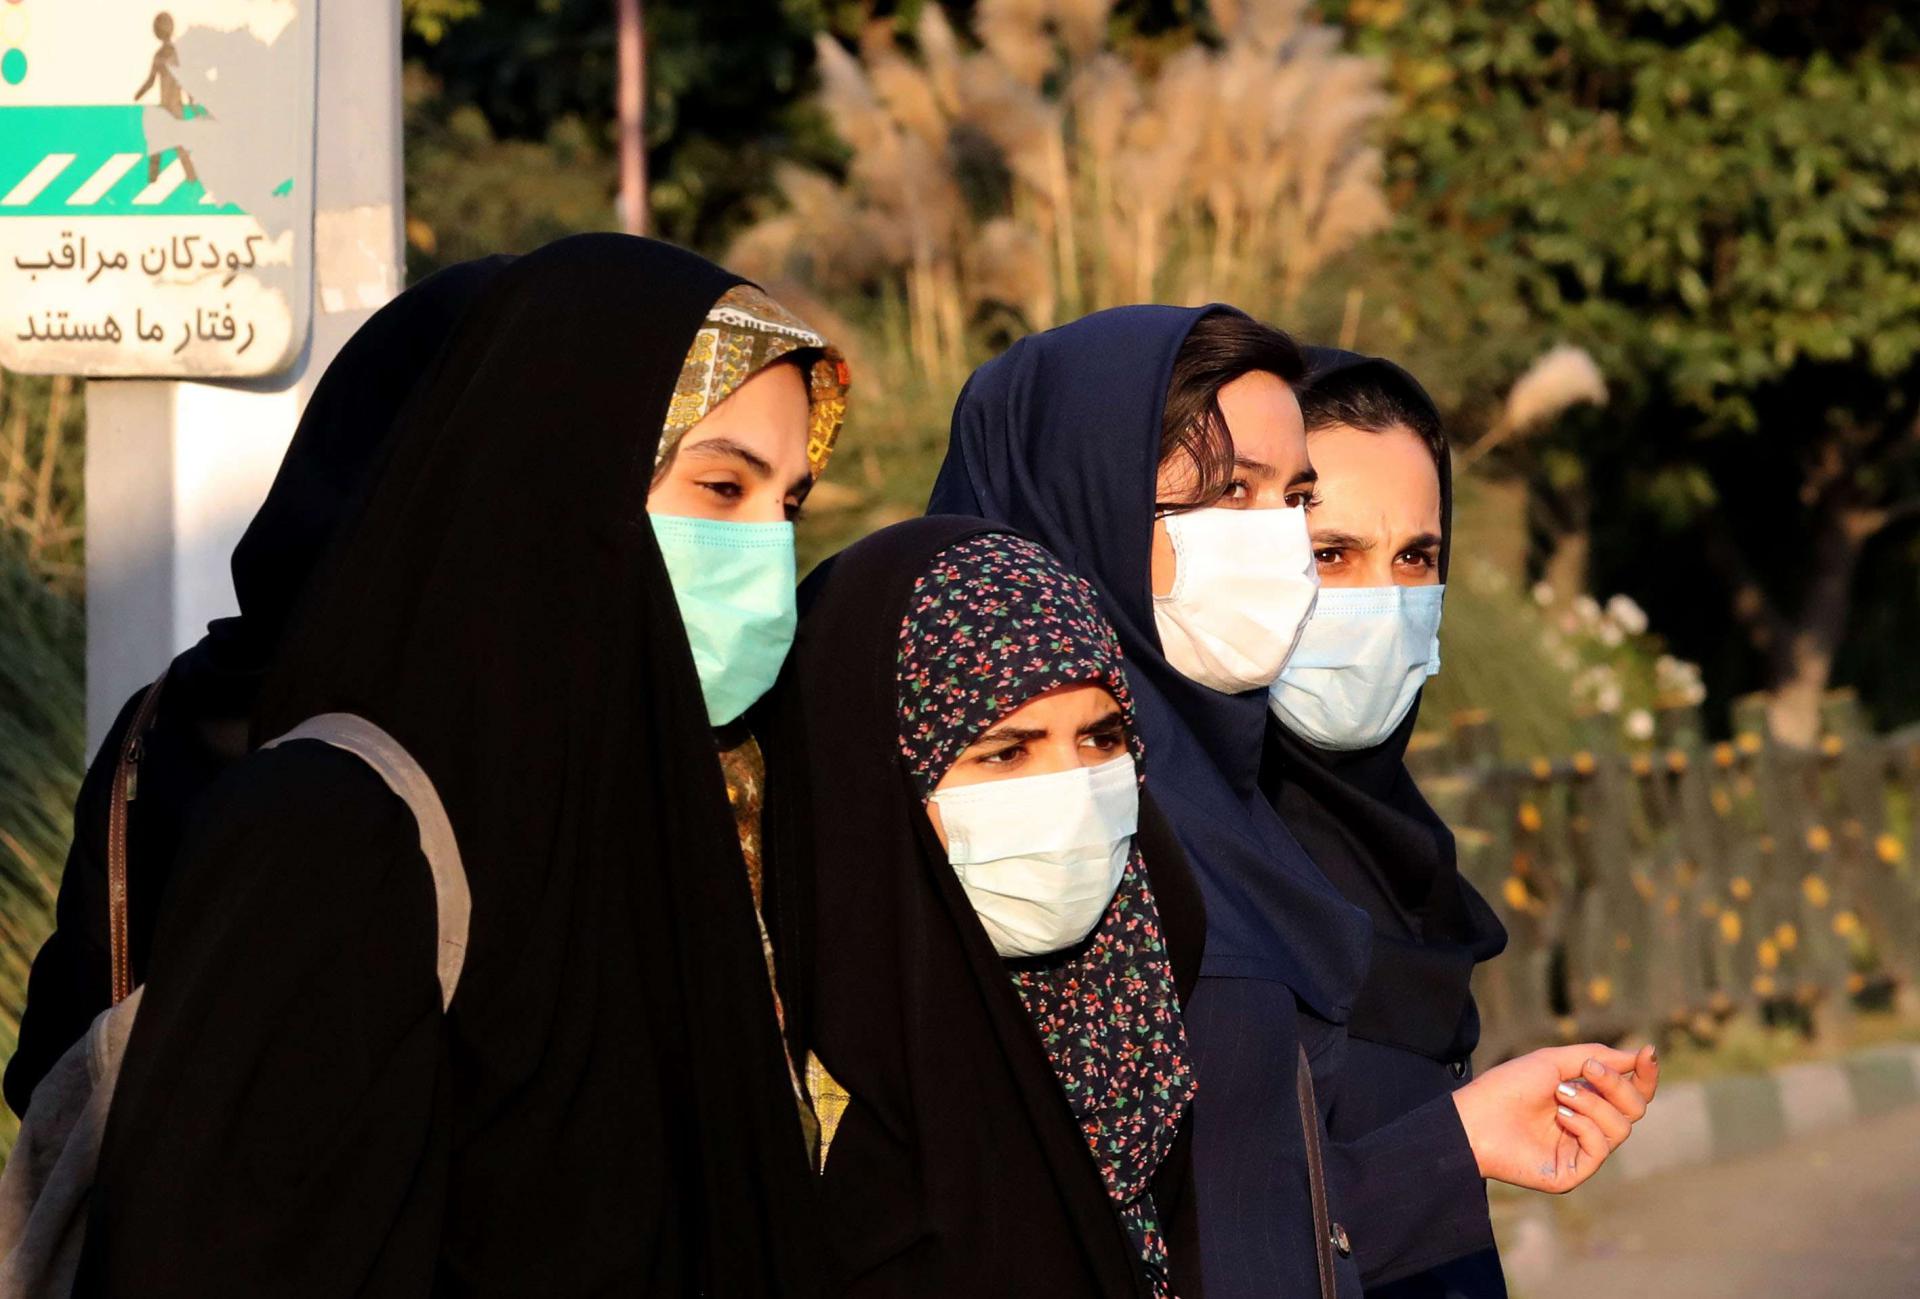 السلطات الدينية في ايران تفرض الزامية الحجاب في الأماكن العامة